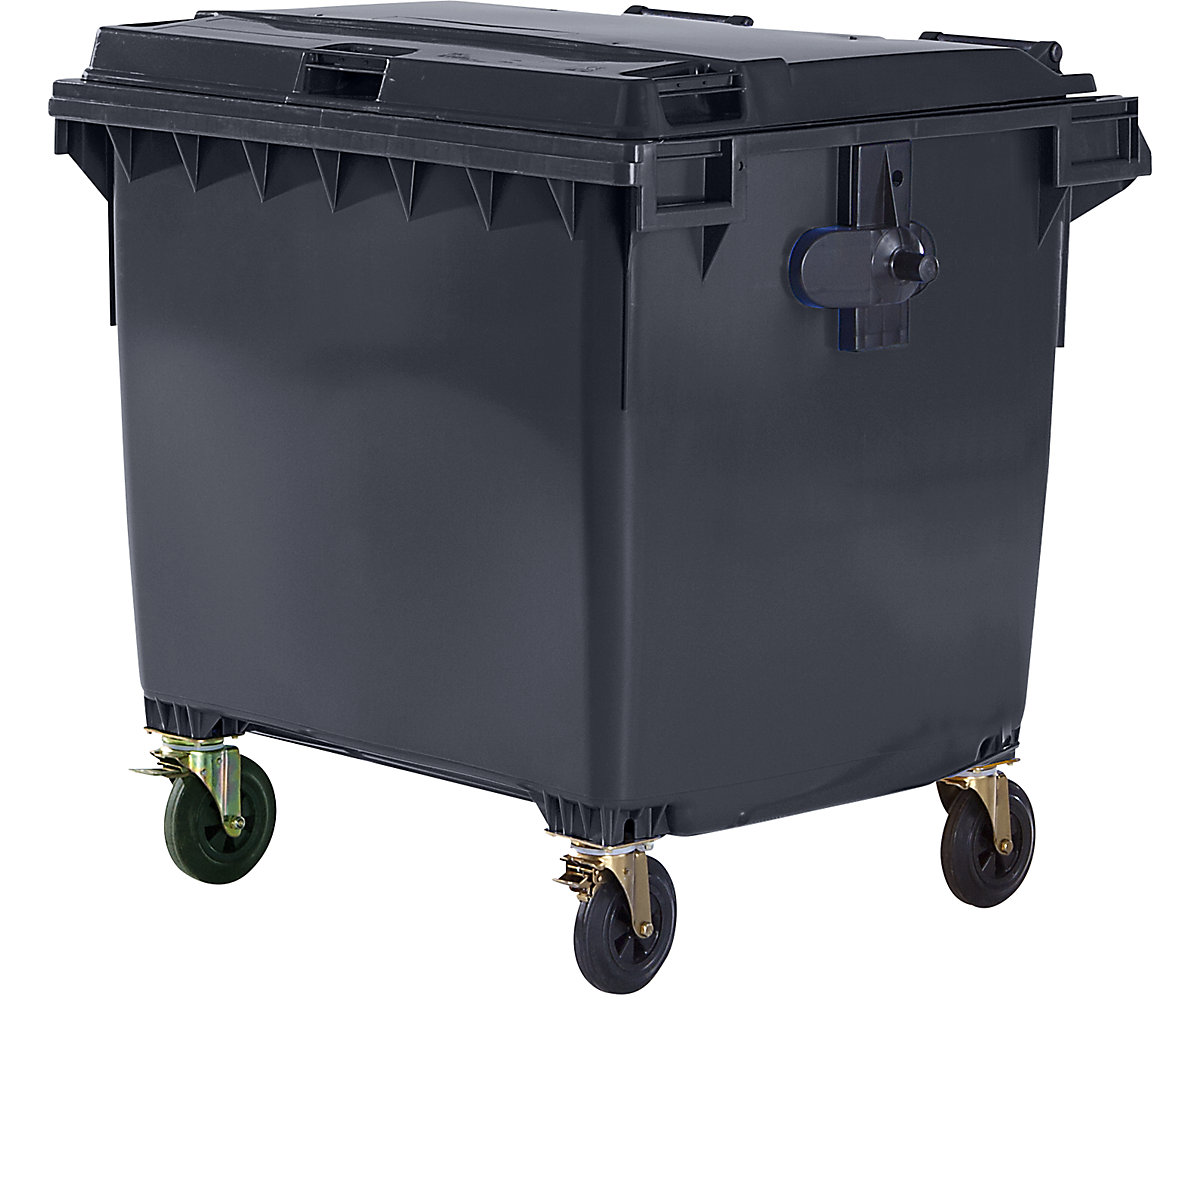 Müllcontainer aus Kunststoff, DIN EN 840, Volumen 1100 l, BxHxT 1370 x 1470 x 1115 mm, anthrazit, ab 5 Stk